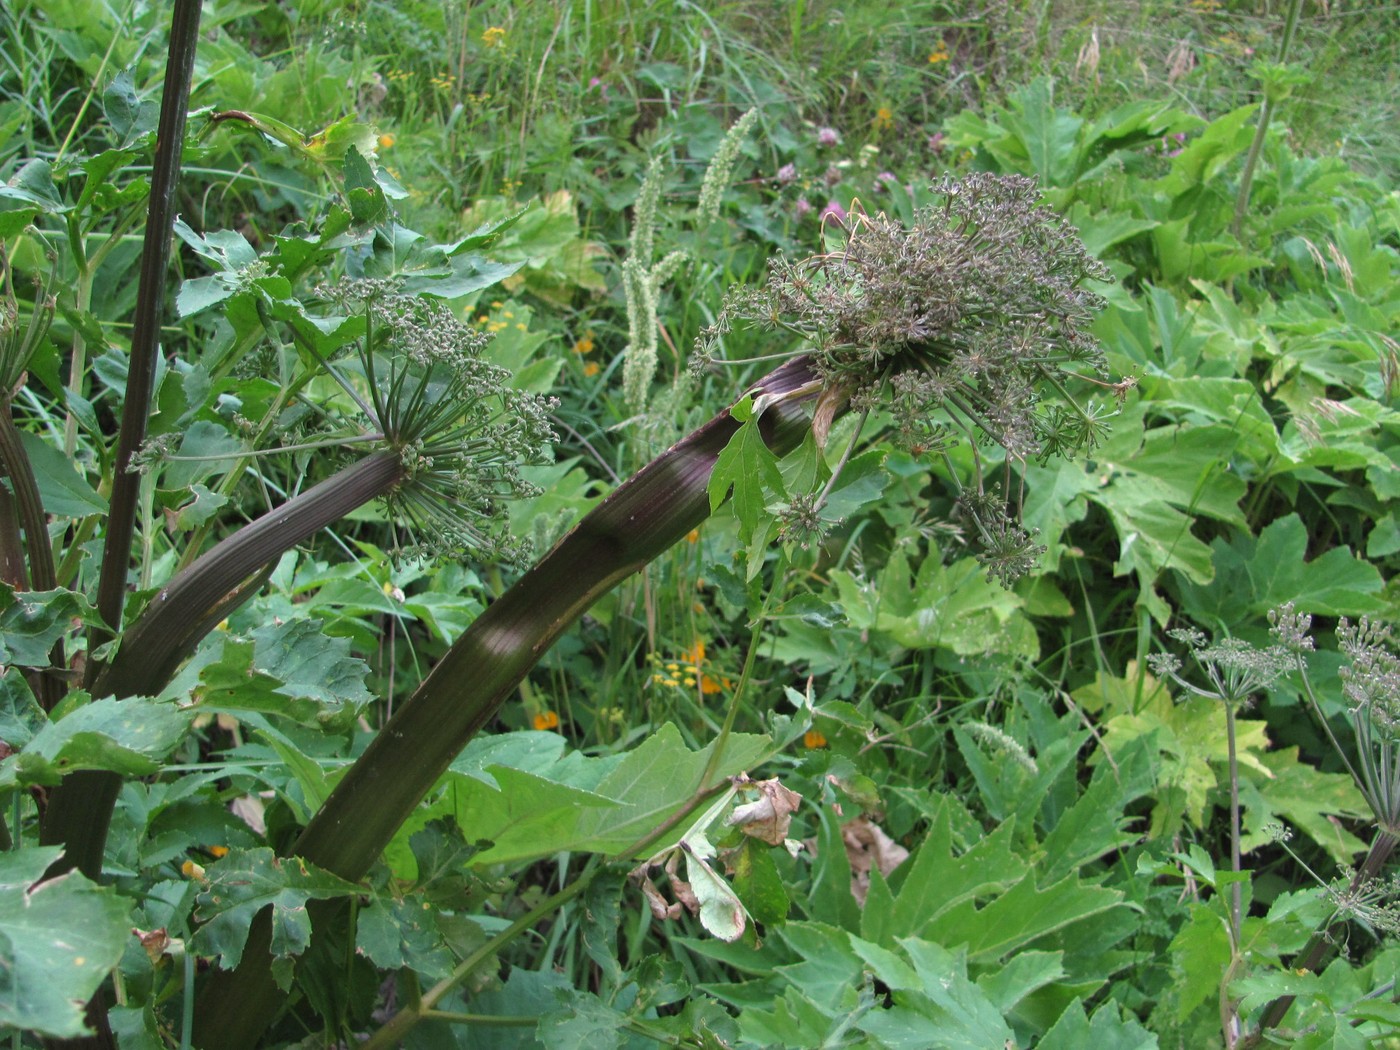 Image of Agasyllis latifolia specimen.